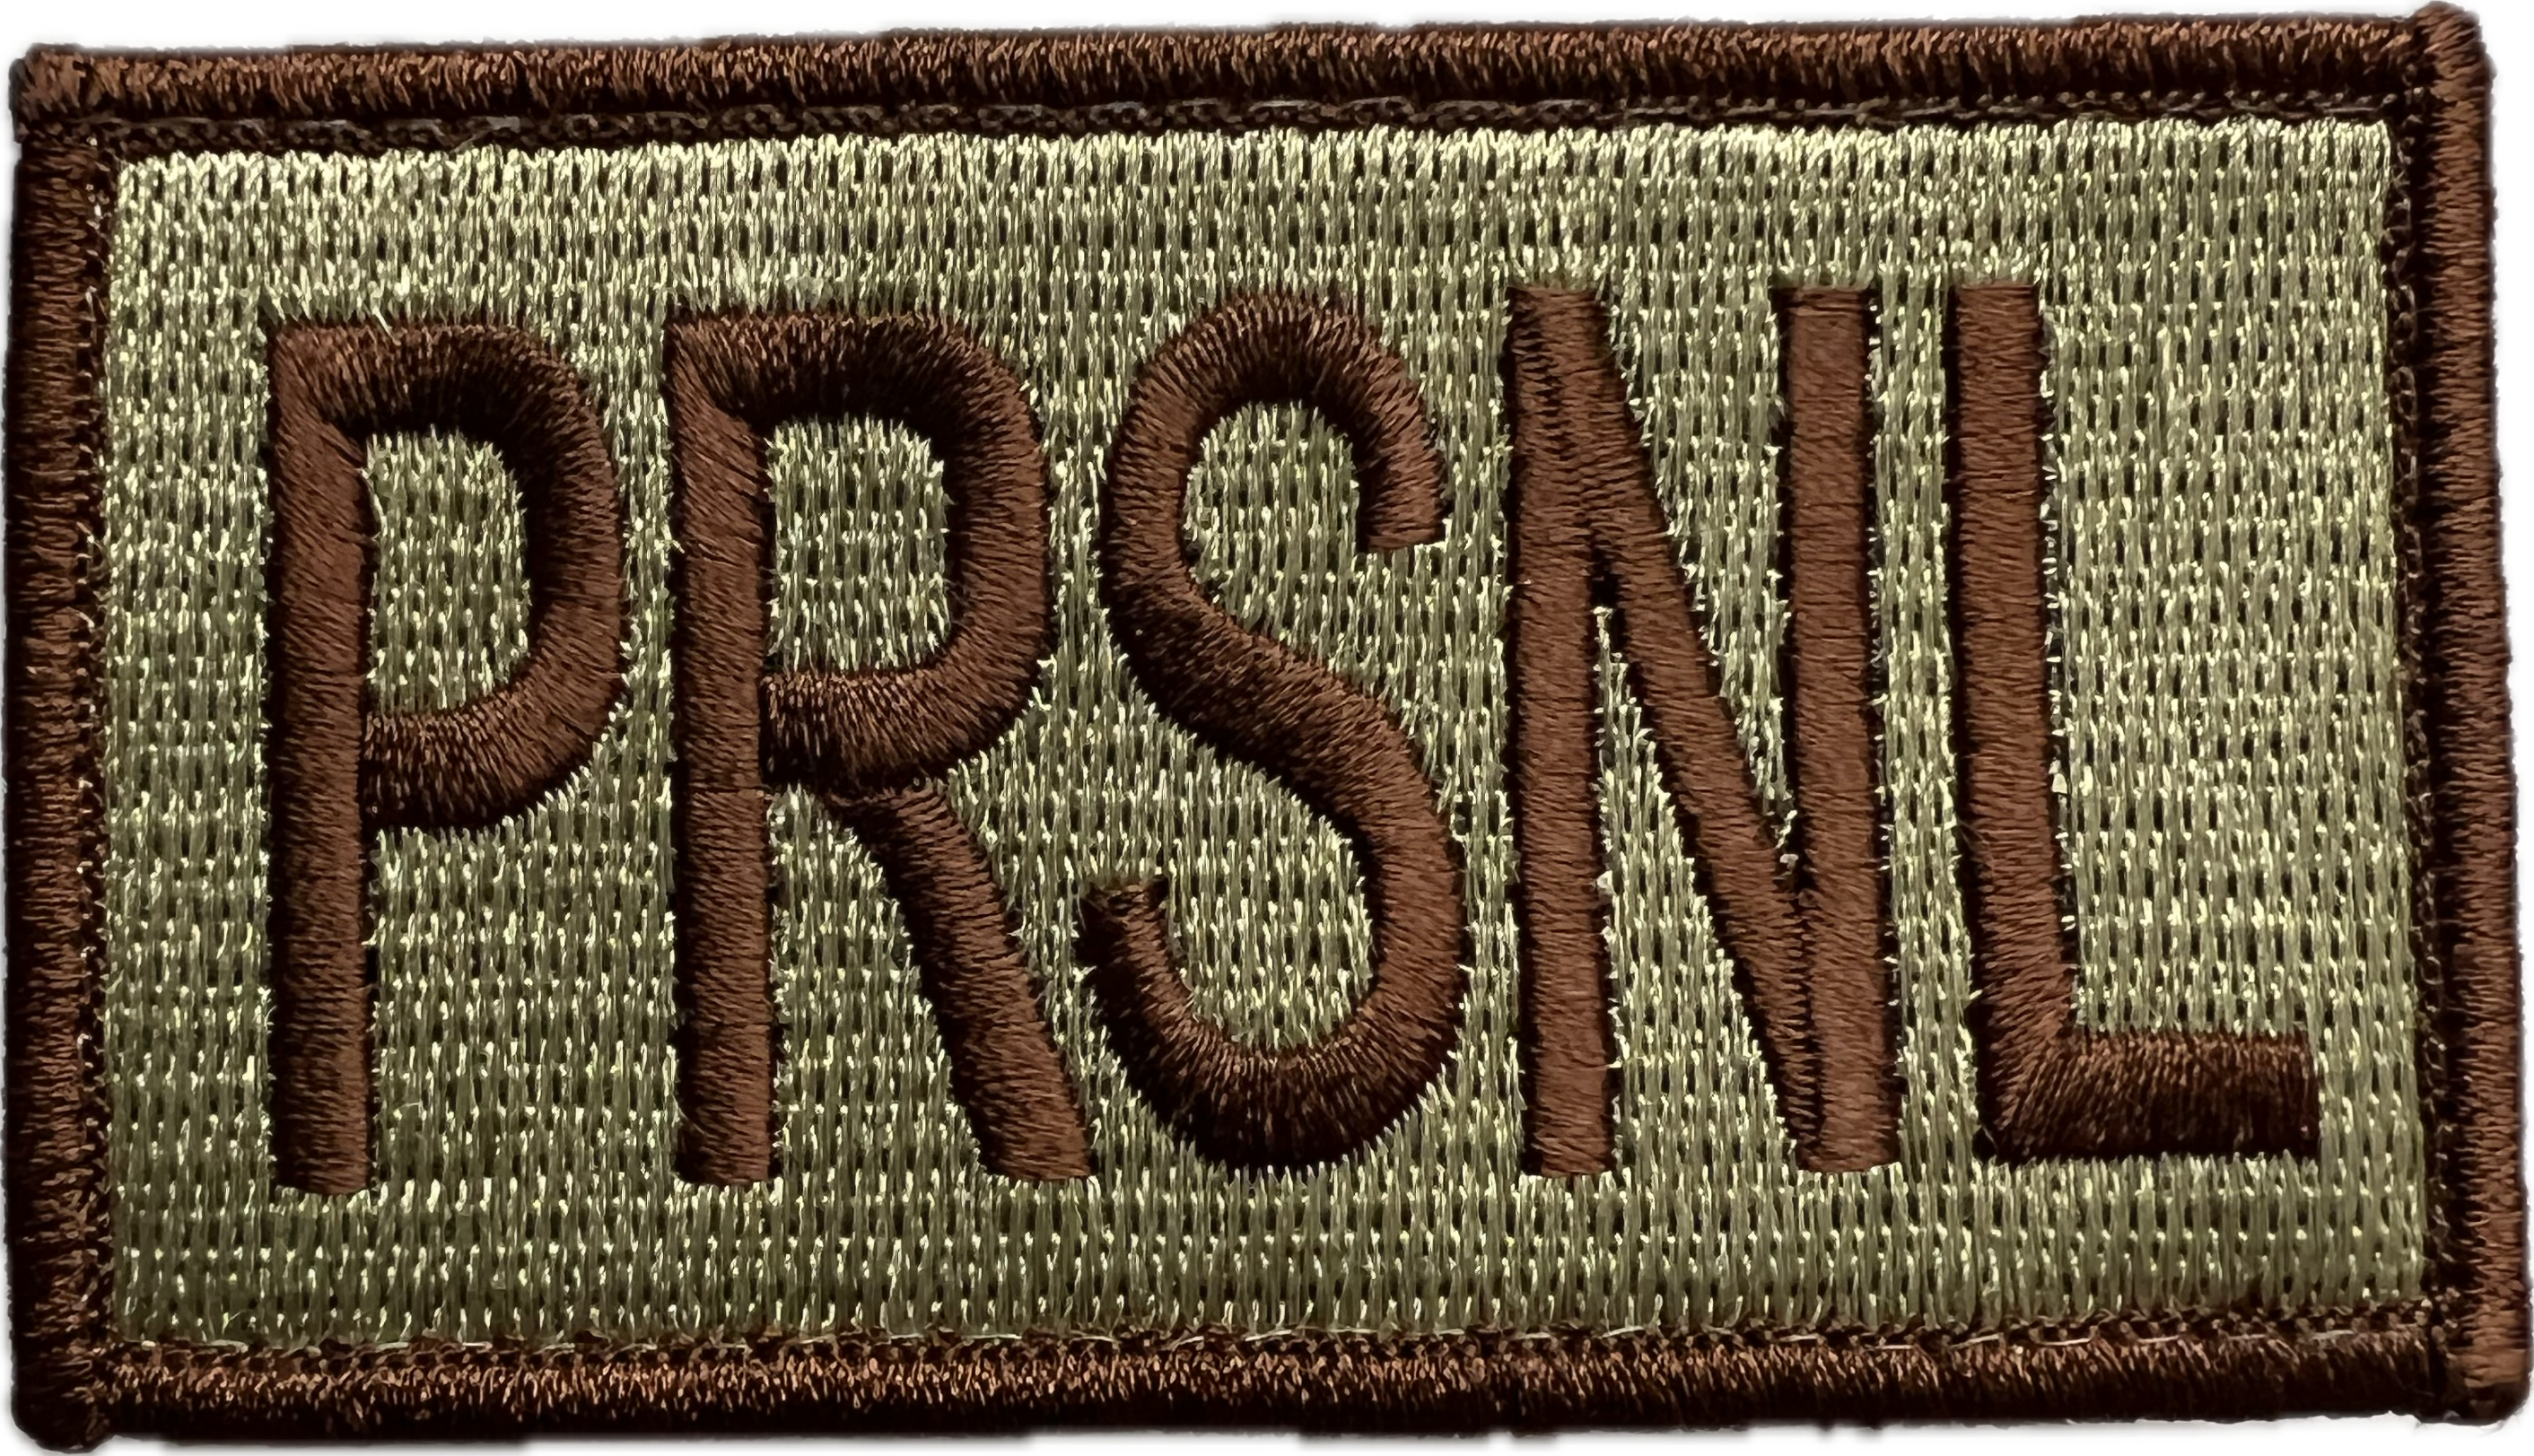 PRSNL - Duty Identifier Patch (Reaper Red)